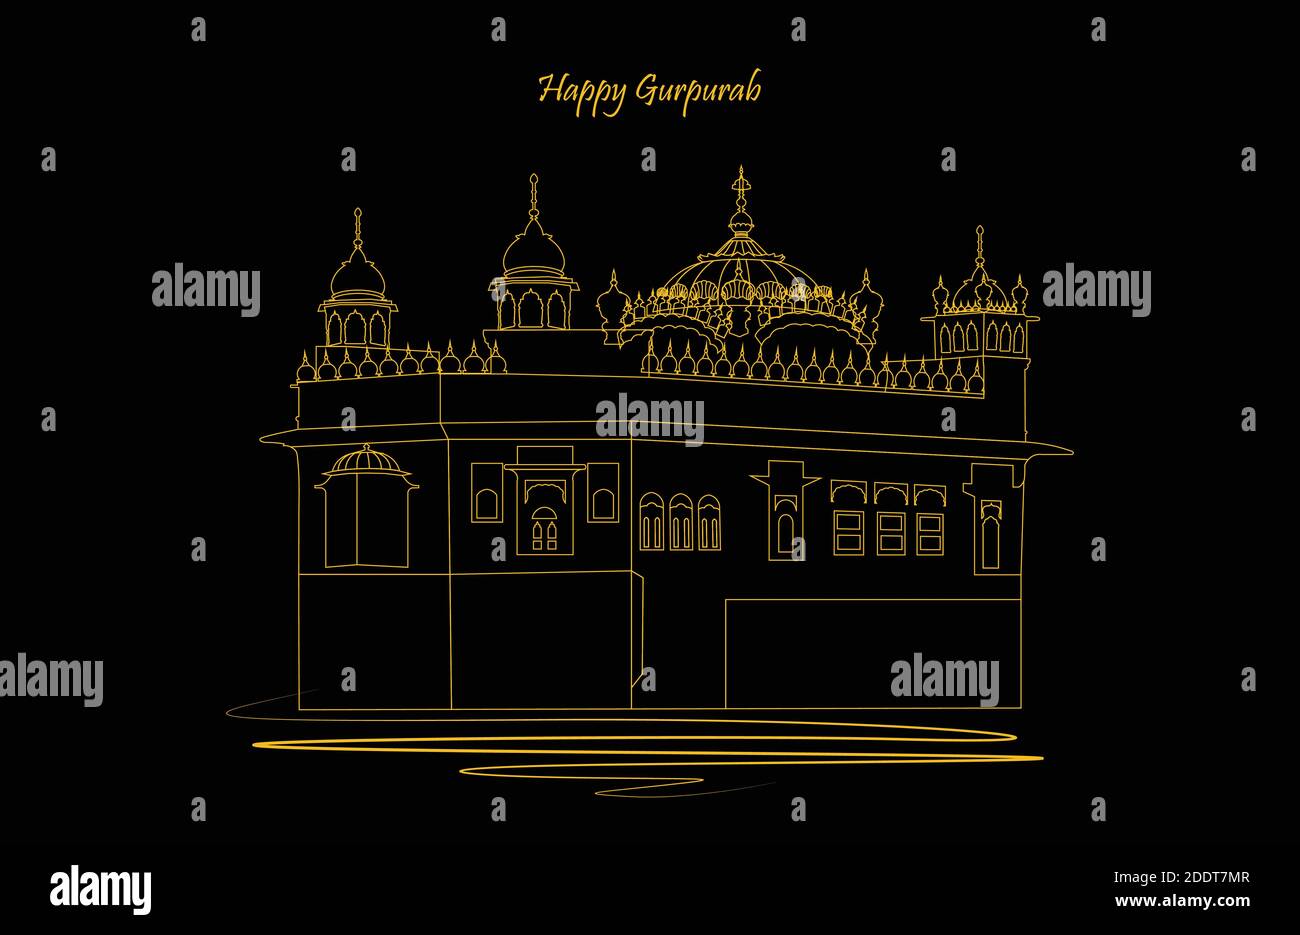 Illustrazione vettoriale del guru nanak prakash parv. Felice Gurpurab. Tempio di colore dorato e bianco su sfondo di colore scuro Illustrazione Vettoriale